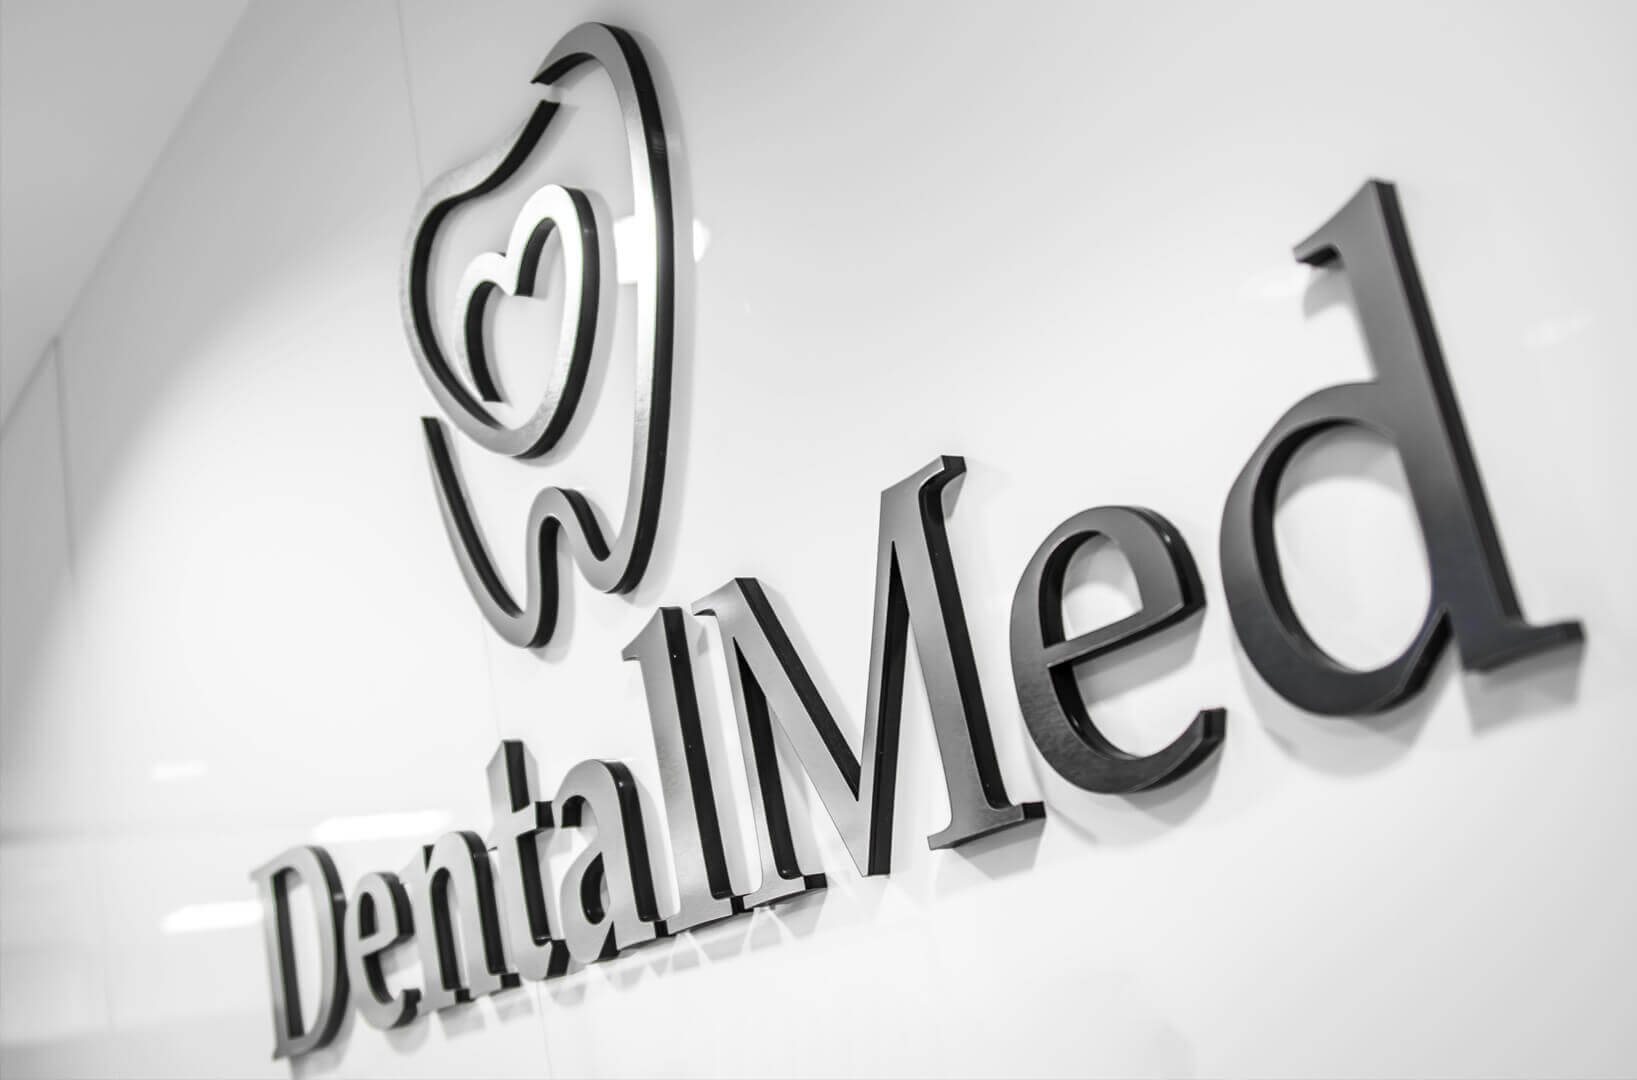 DentalMed - DentalMed: logotipo y letras en 3D de plexiglás colocados junto al mostrador de recepción